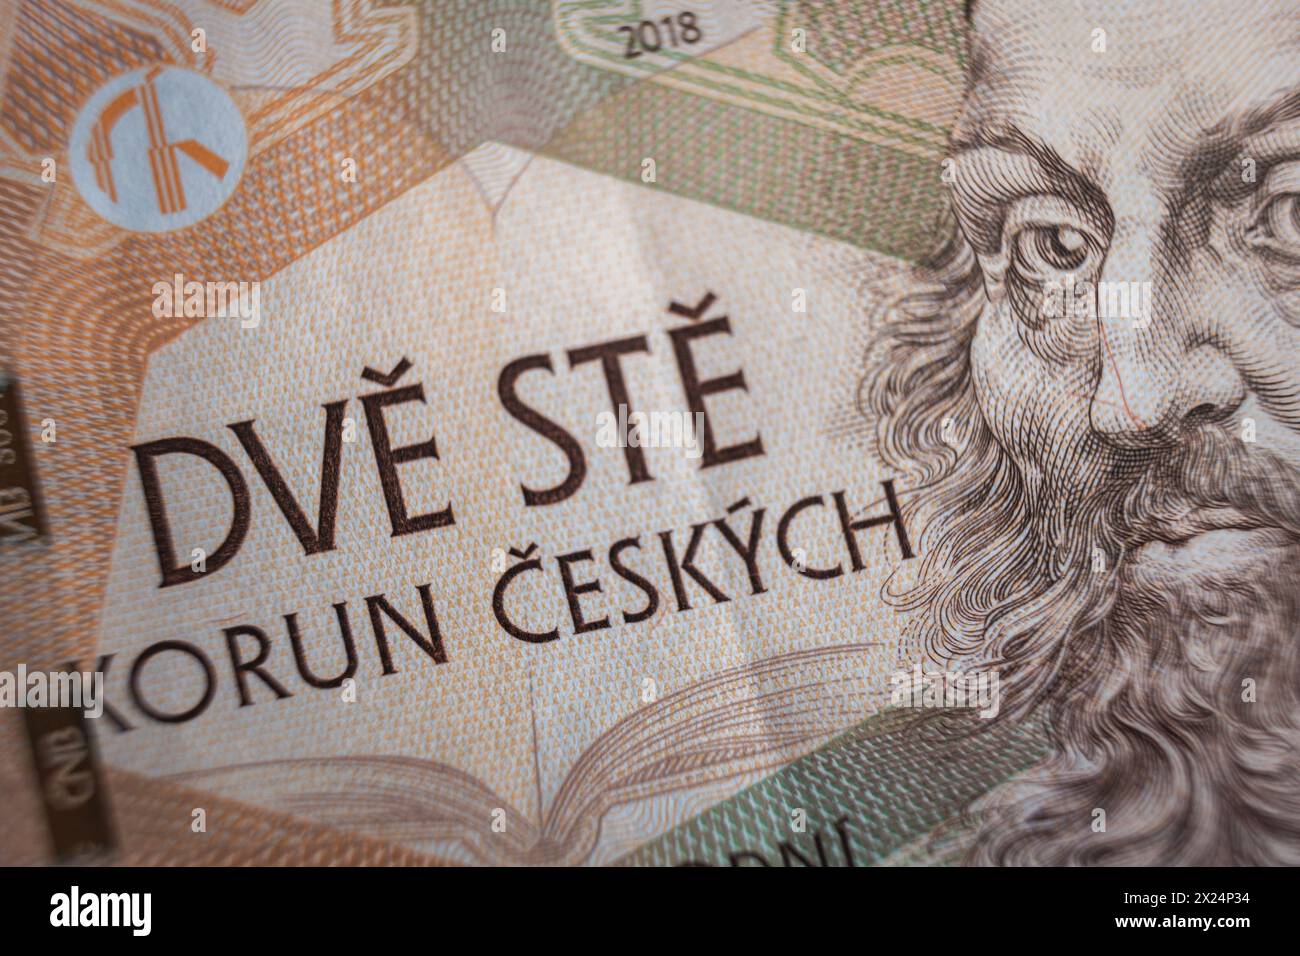 Gros plan sur dve ste czech Koruna inflation économique des billets en république tchèque concept Banque D'Images